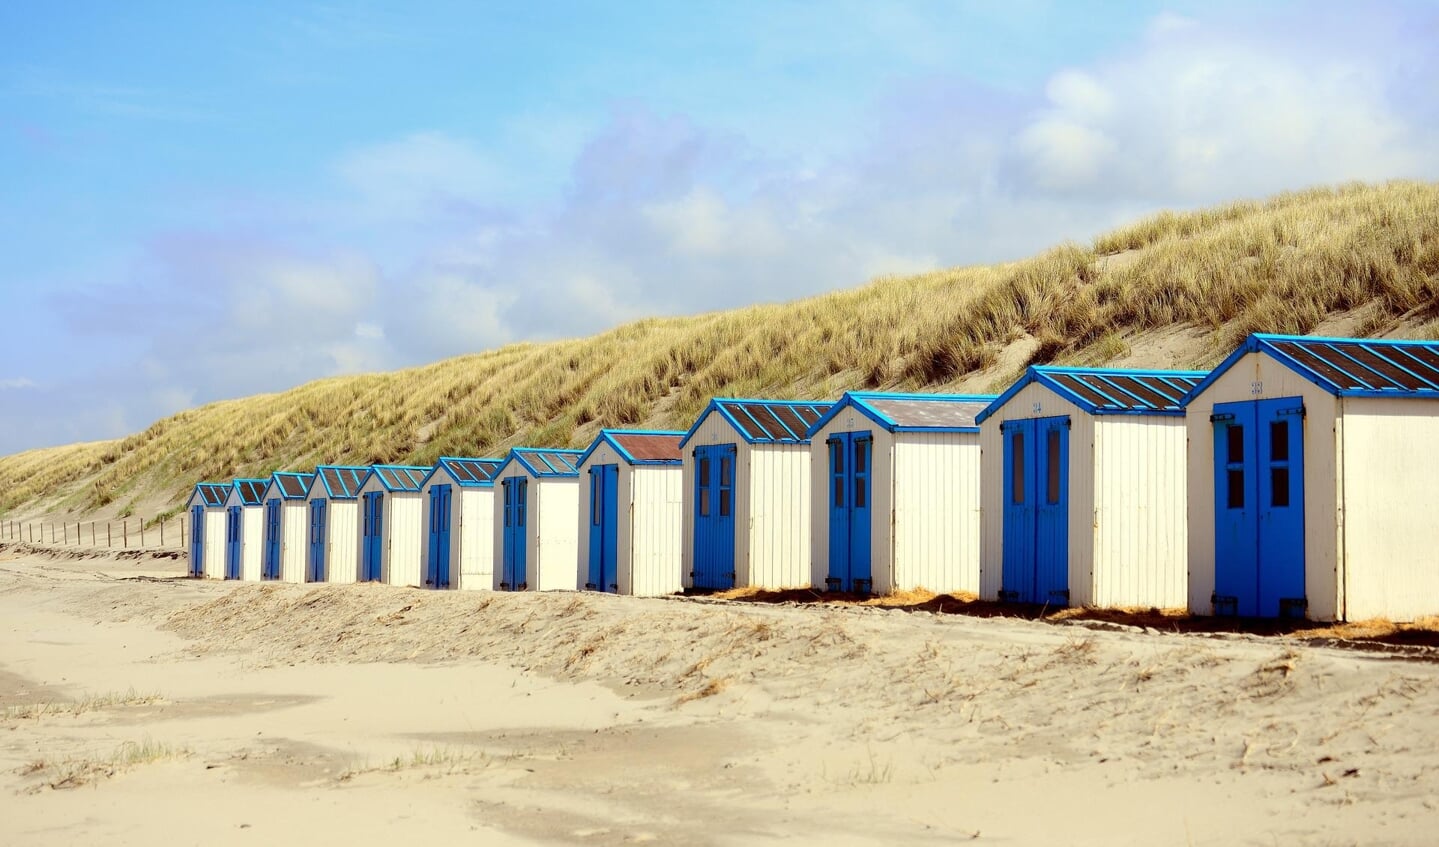 Strandhuisjes op het Texelse zand; het kan niet overal